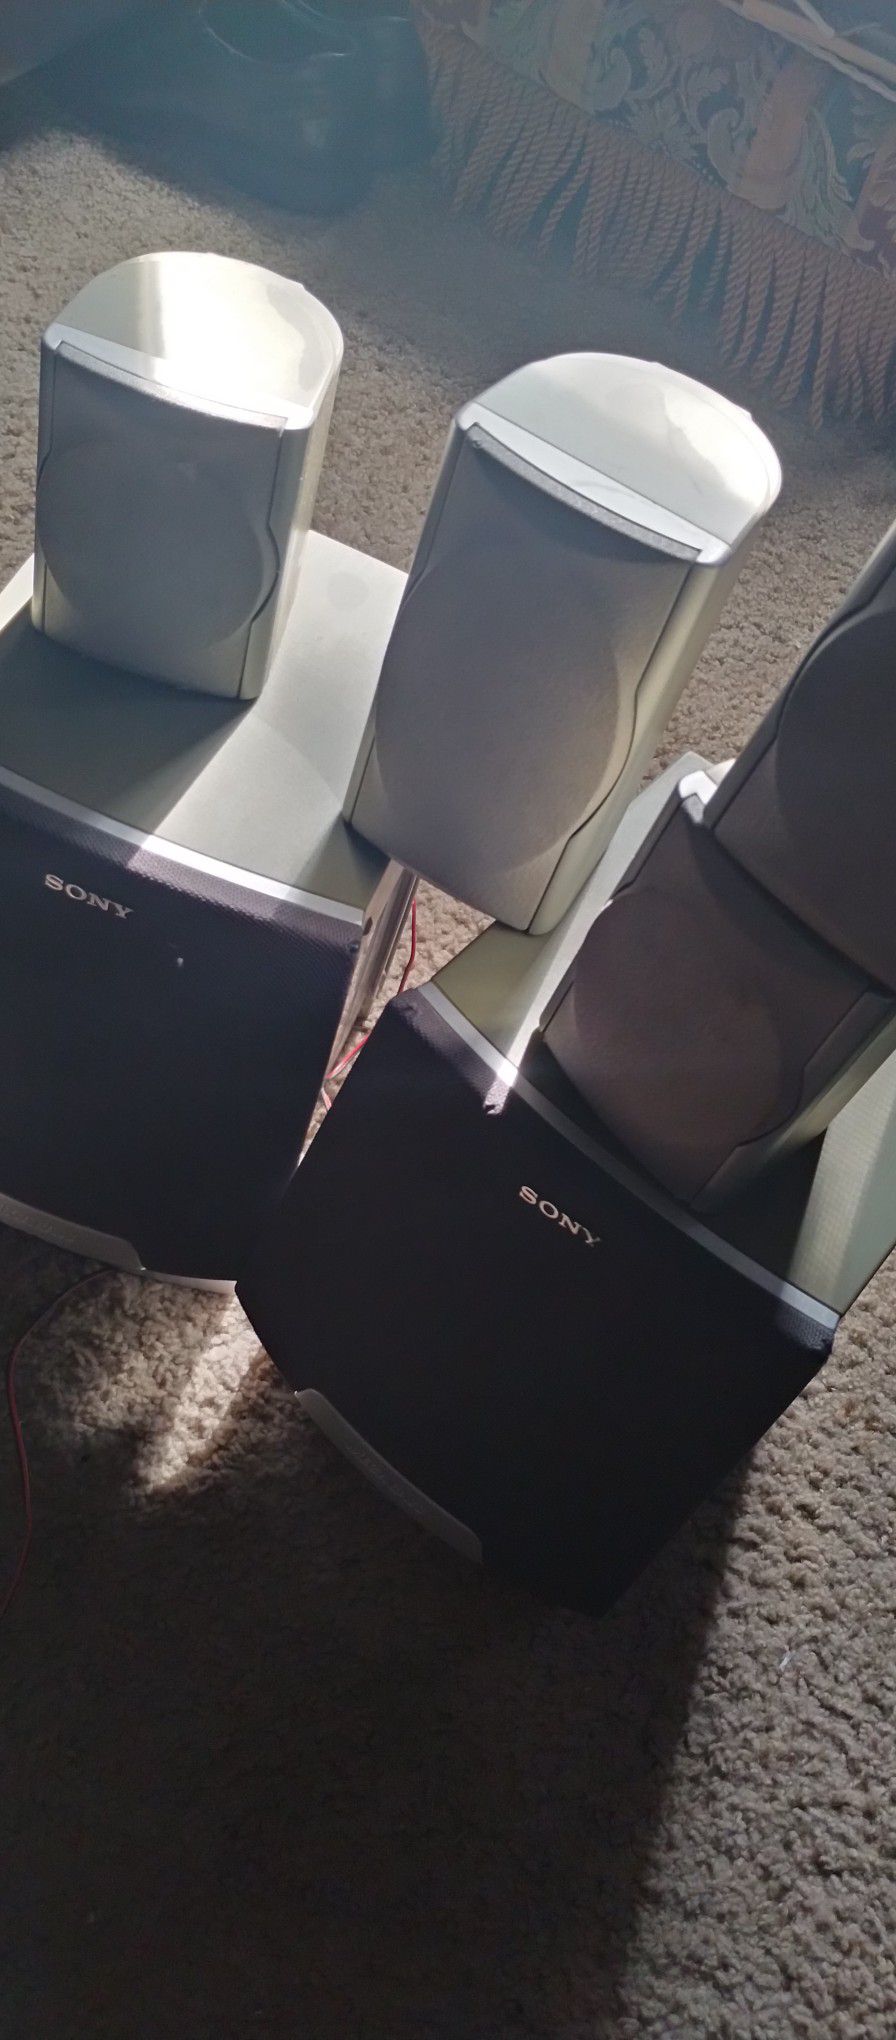 Sony Surround Speakers ( 6)